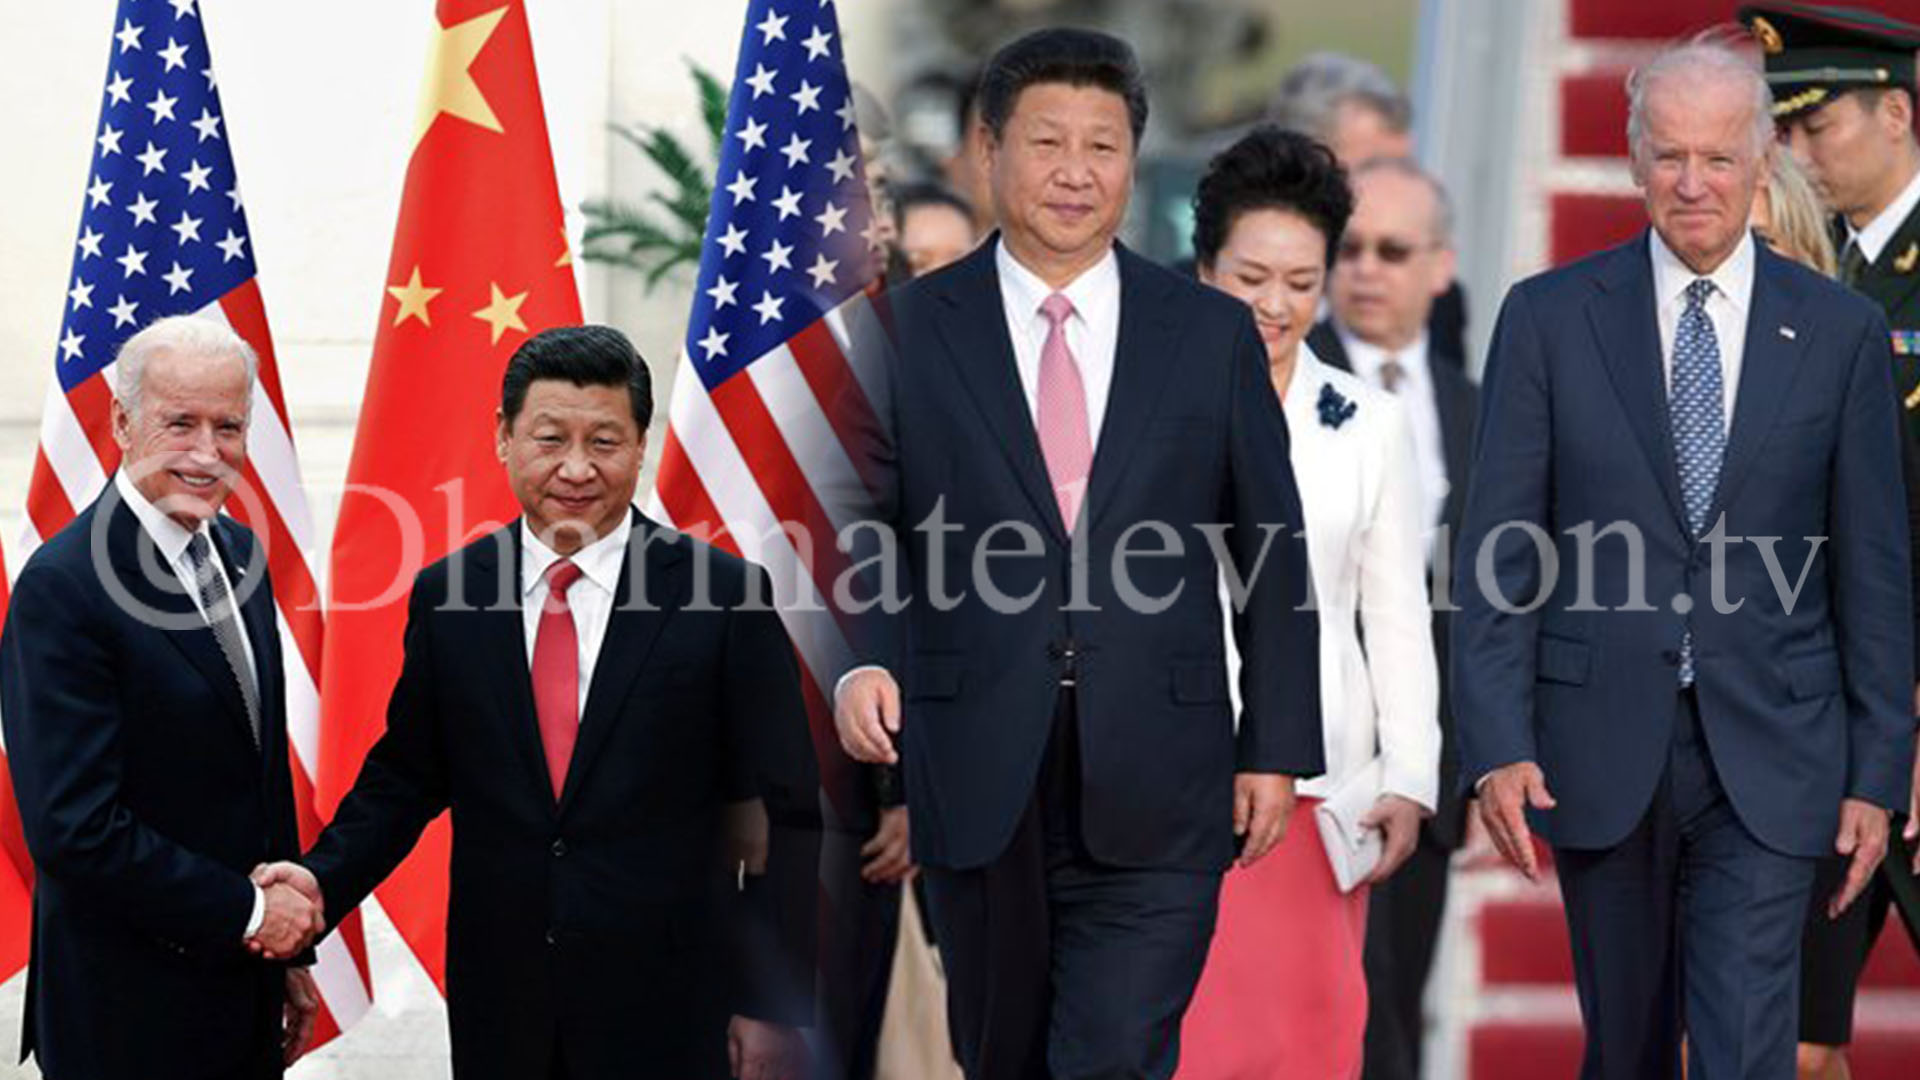 Chinese President congratulates Biden